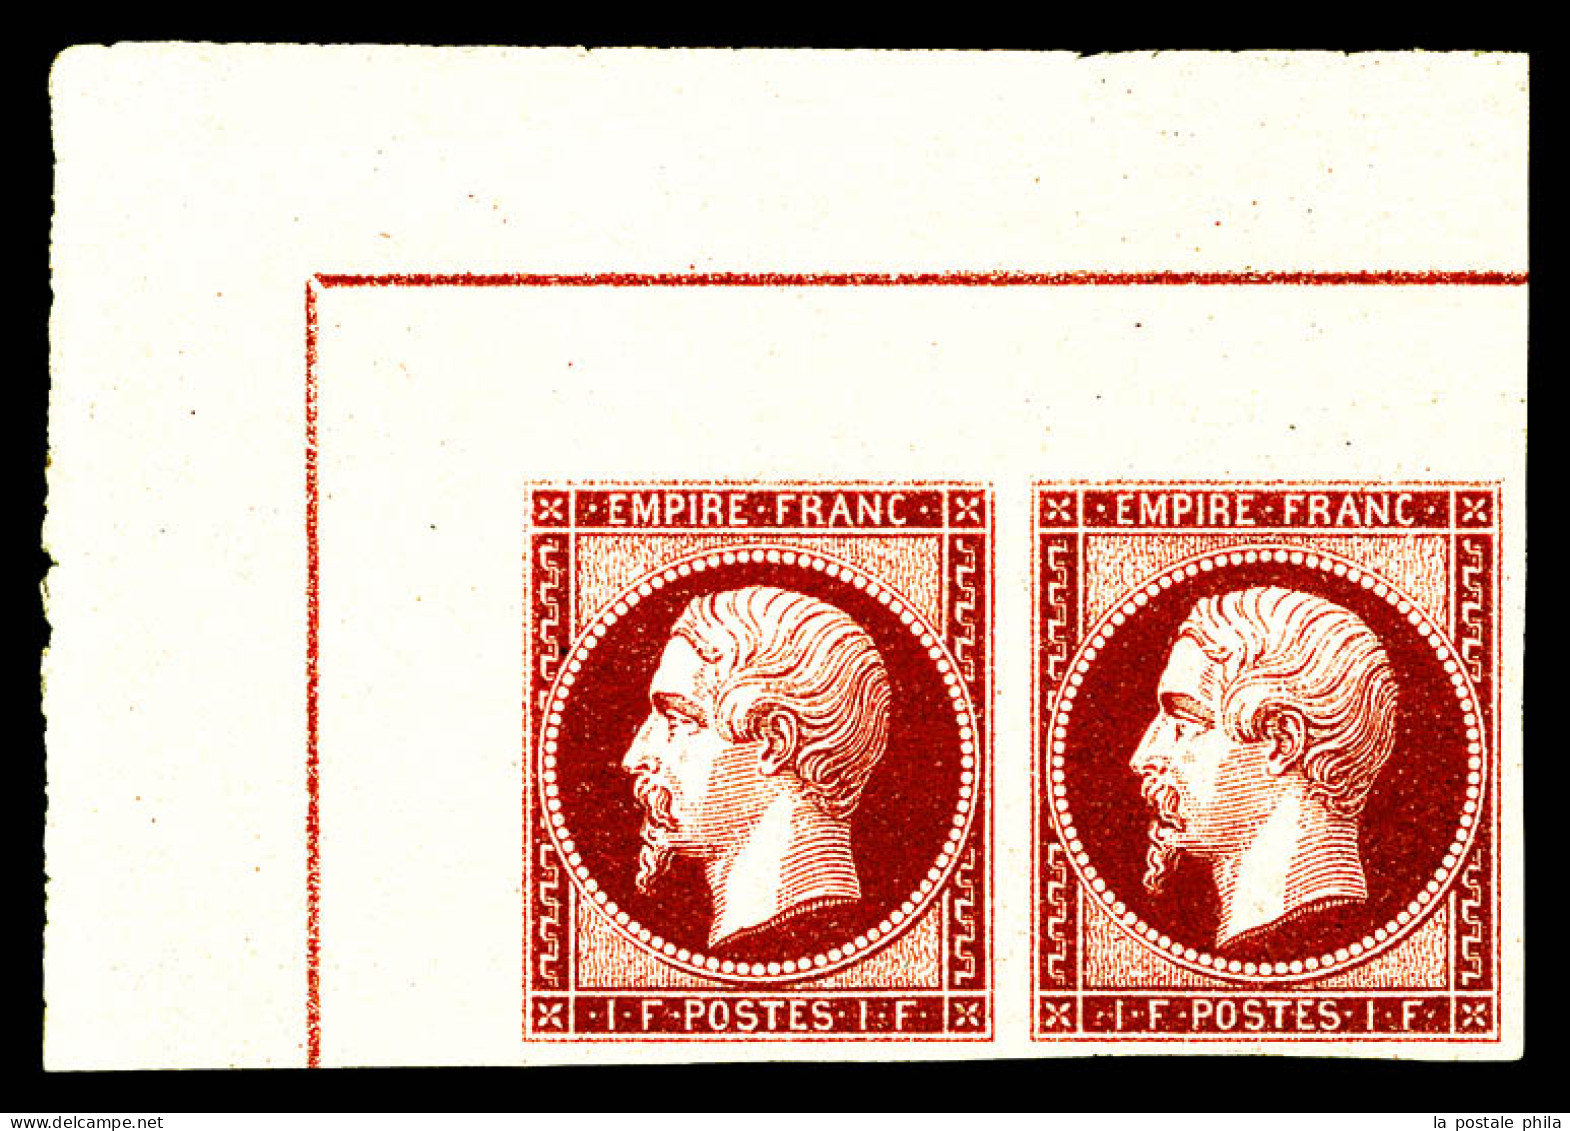 ** N°18c, 1F Carmin-foncé En Paire Coin De Feuille Intégral Avec Double Lignes D'encadrement, Fraîcheur Postale. PIECE E - 1853-1860 Napoleon III